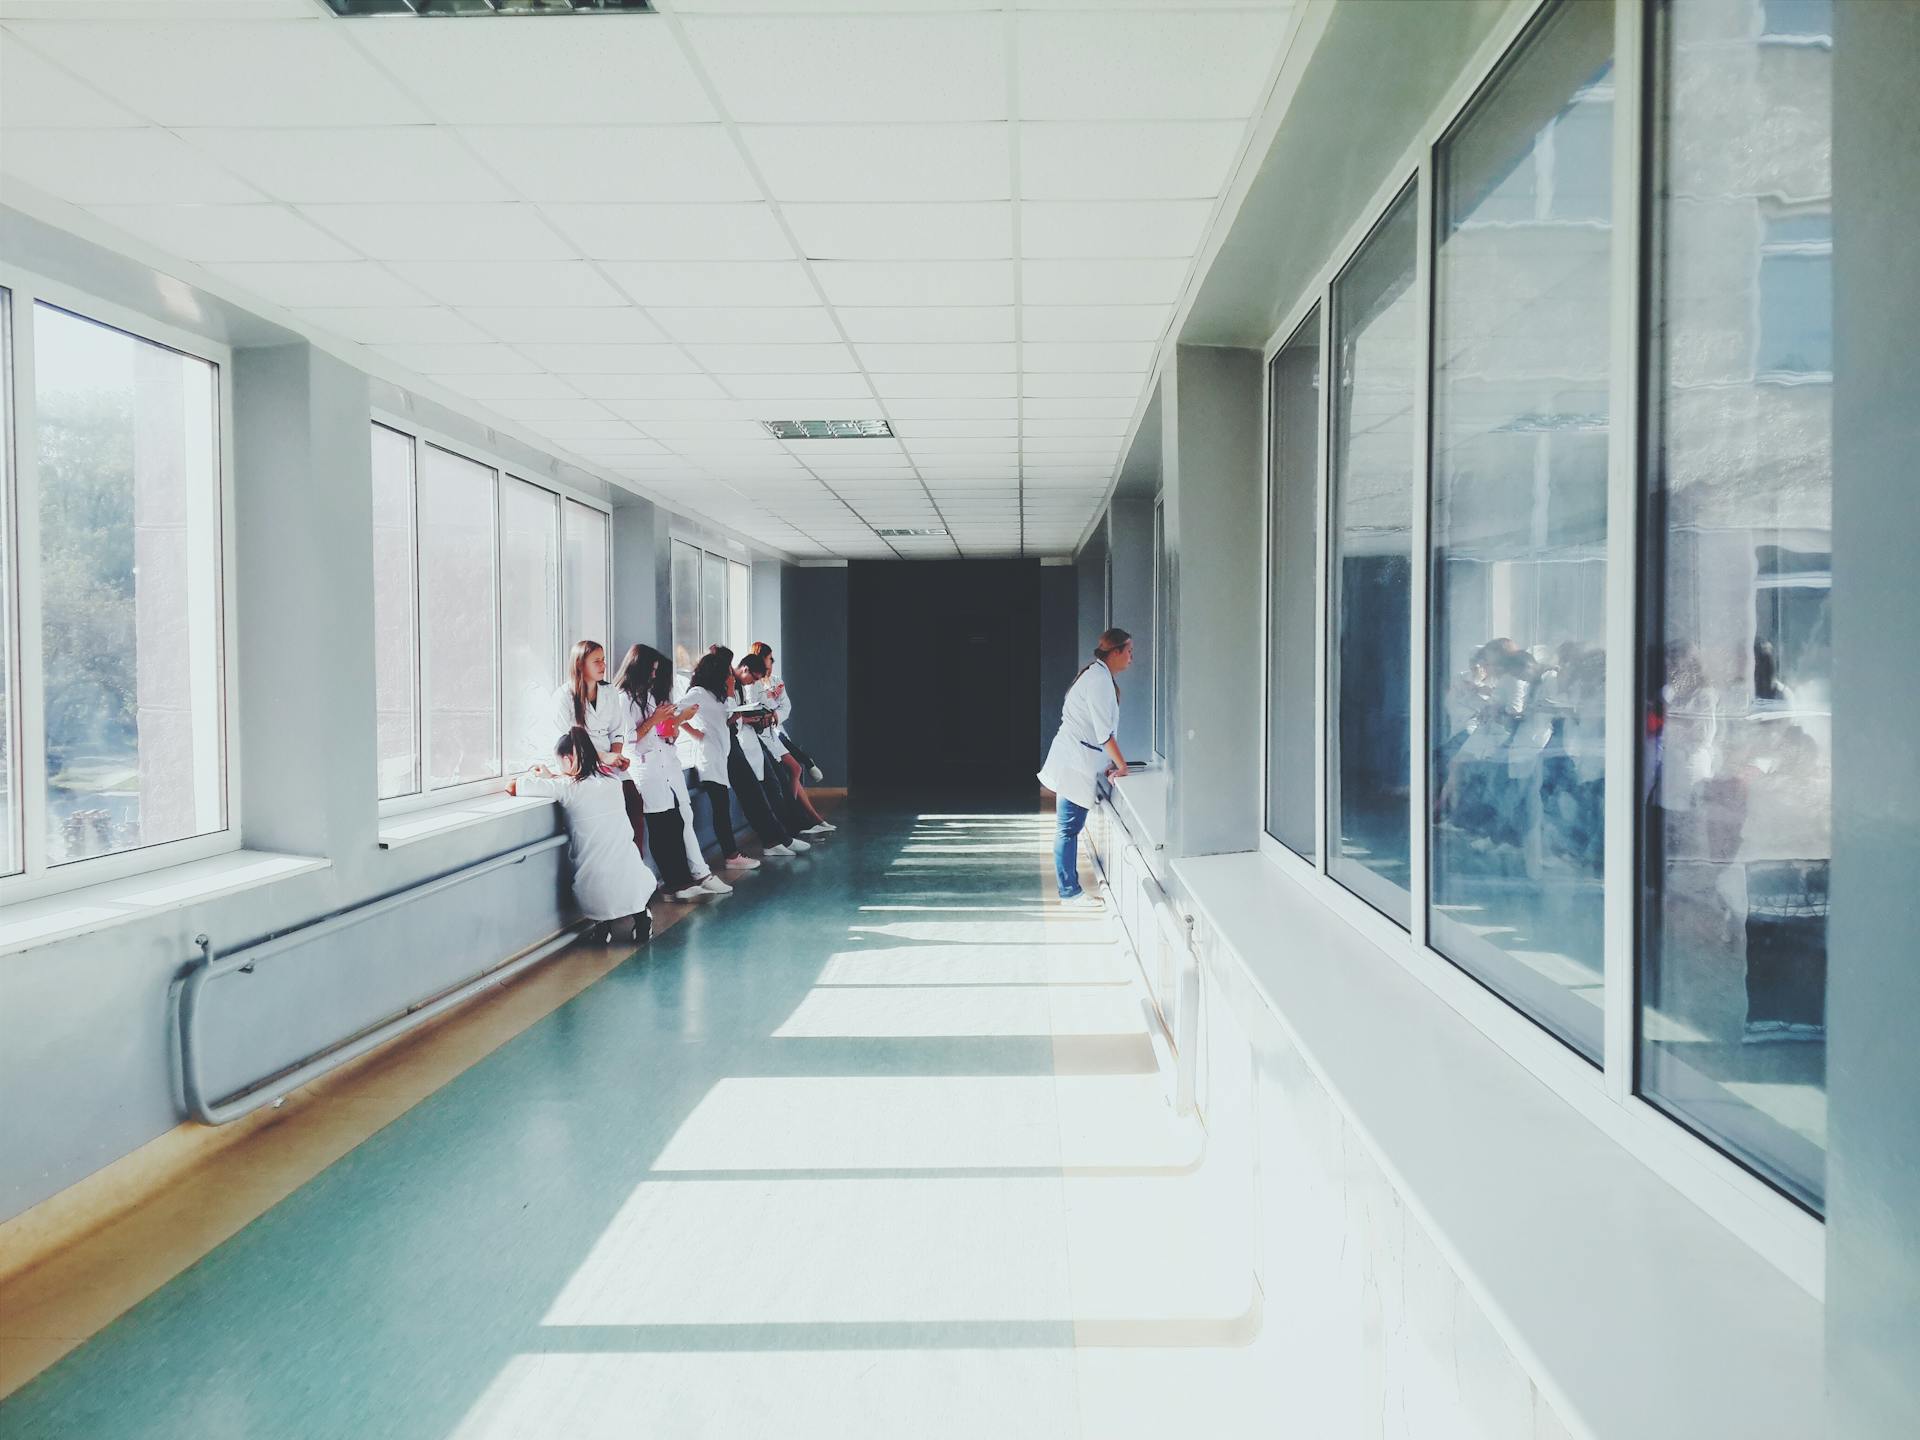 Un couloir d'hôpital | Source : Pexels